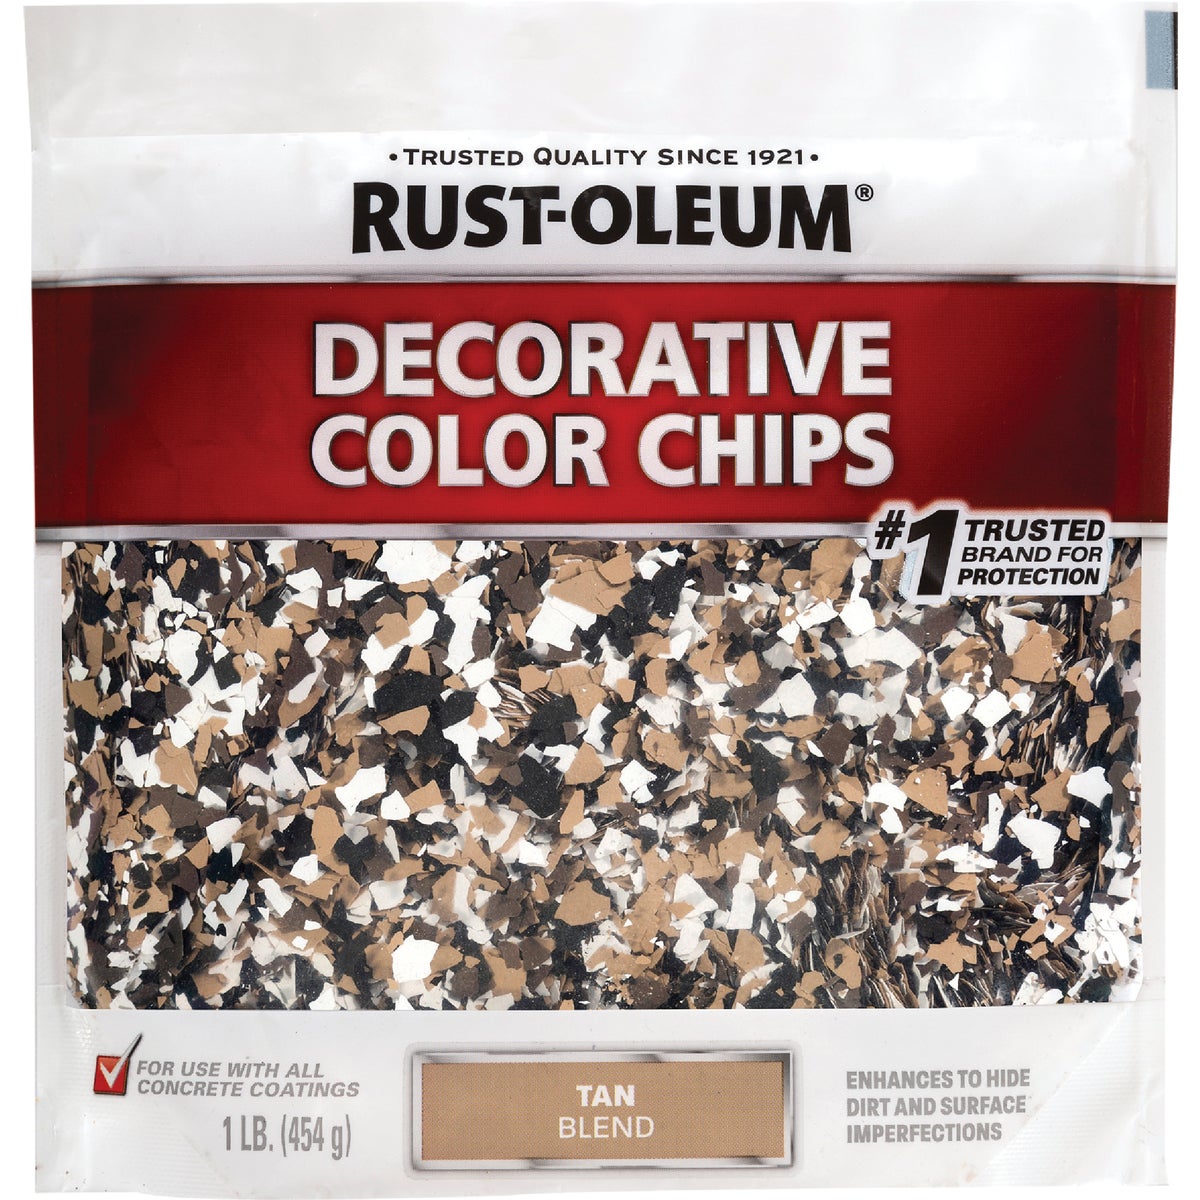 Rust-Oleum Color Chip Concrete Coating, 1 Lb., Tan